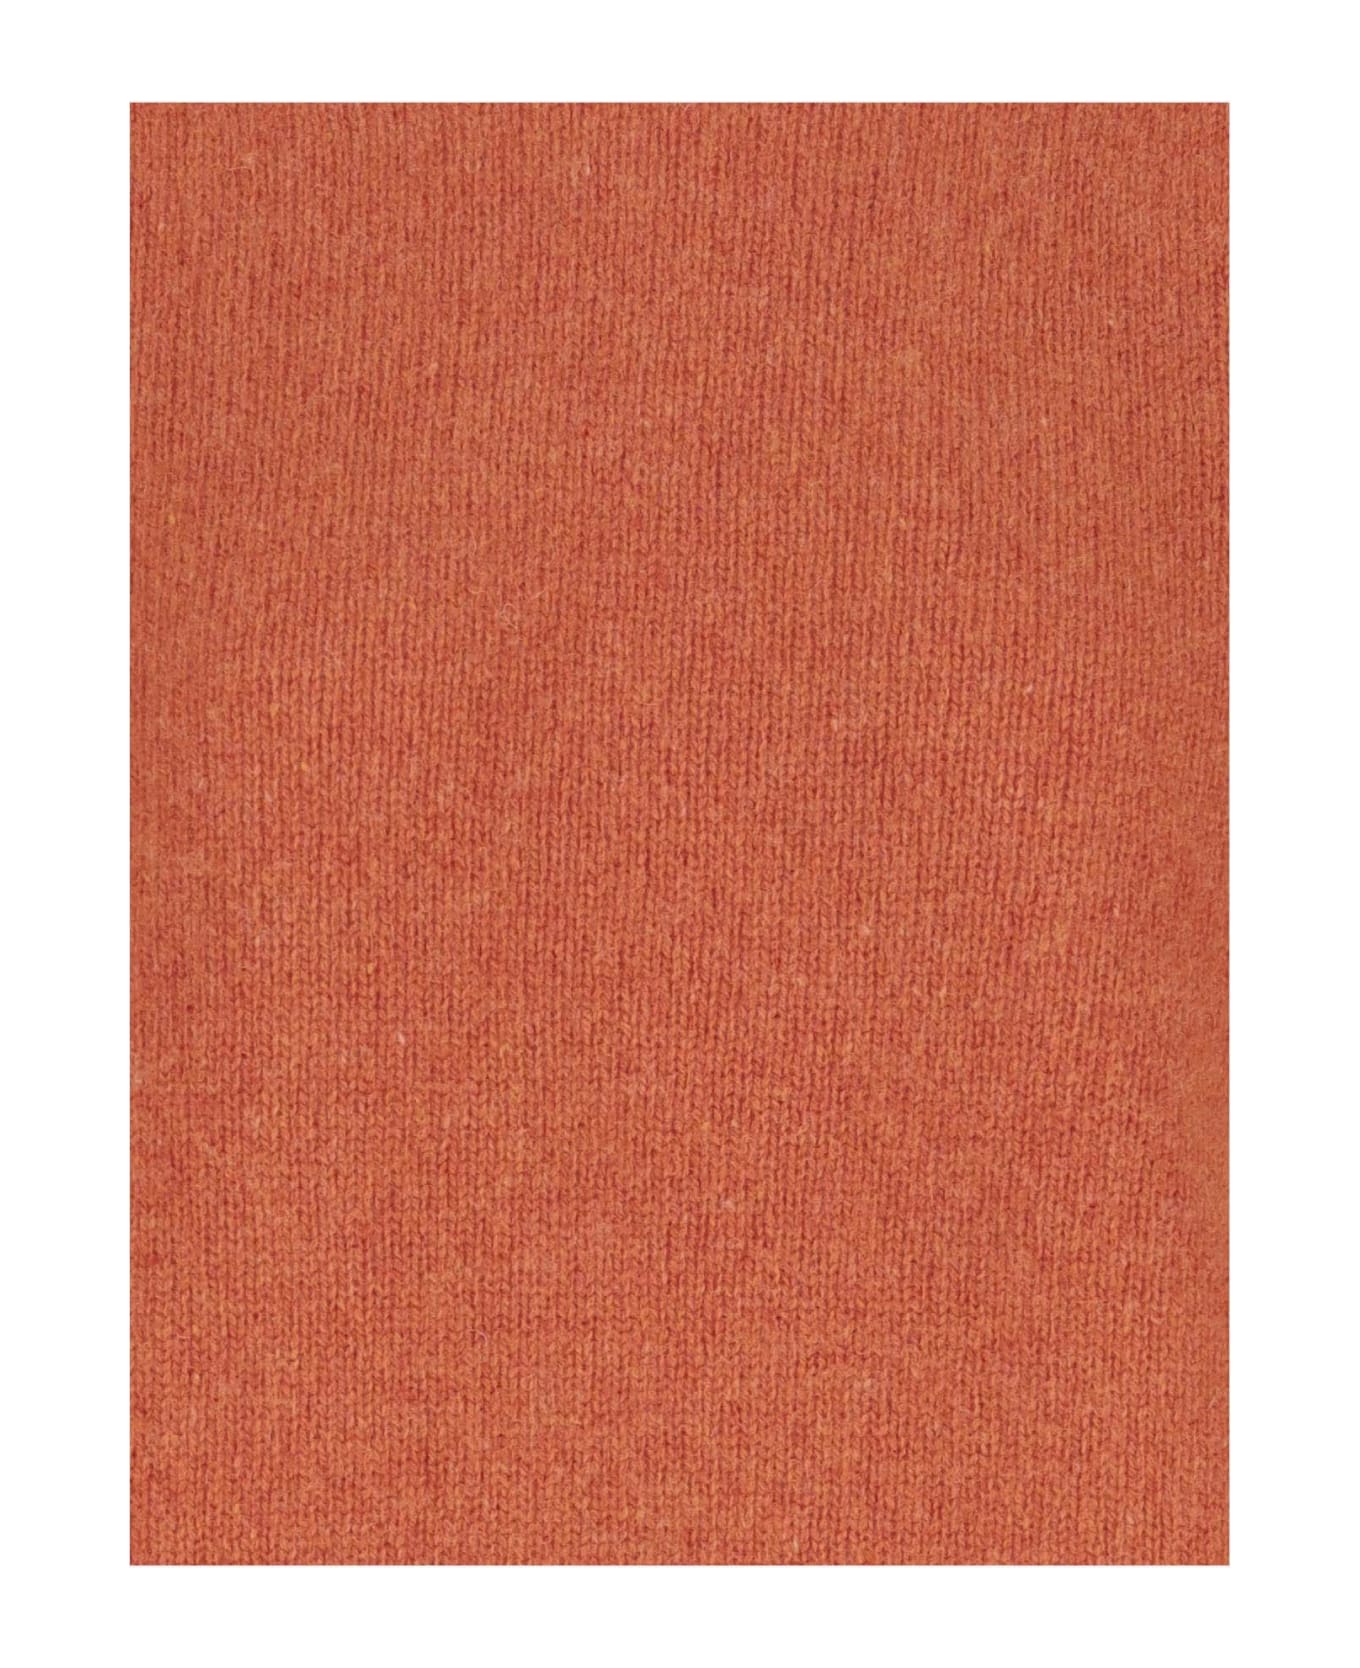 Howlin Wool Sweater - Orange